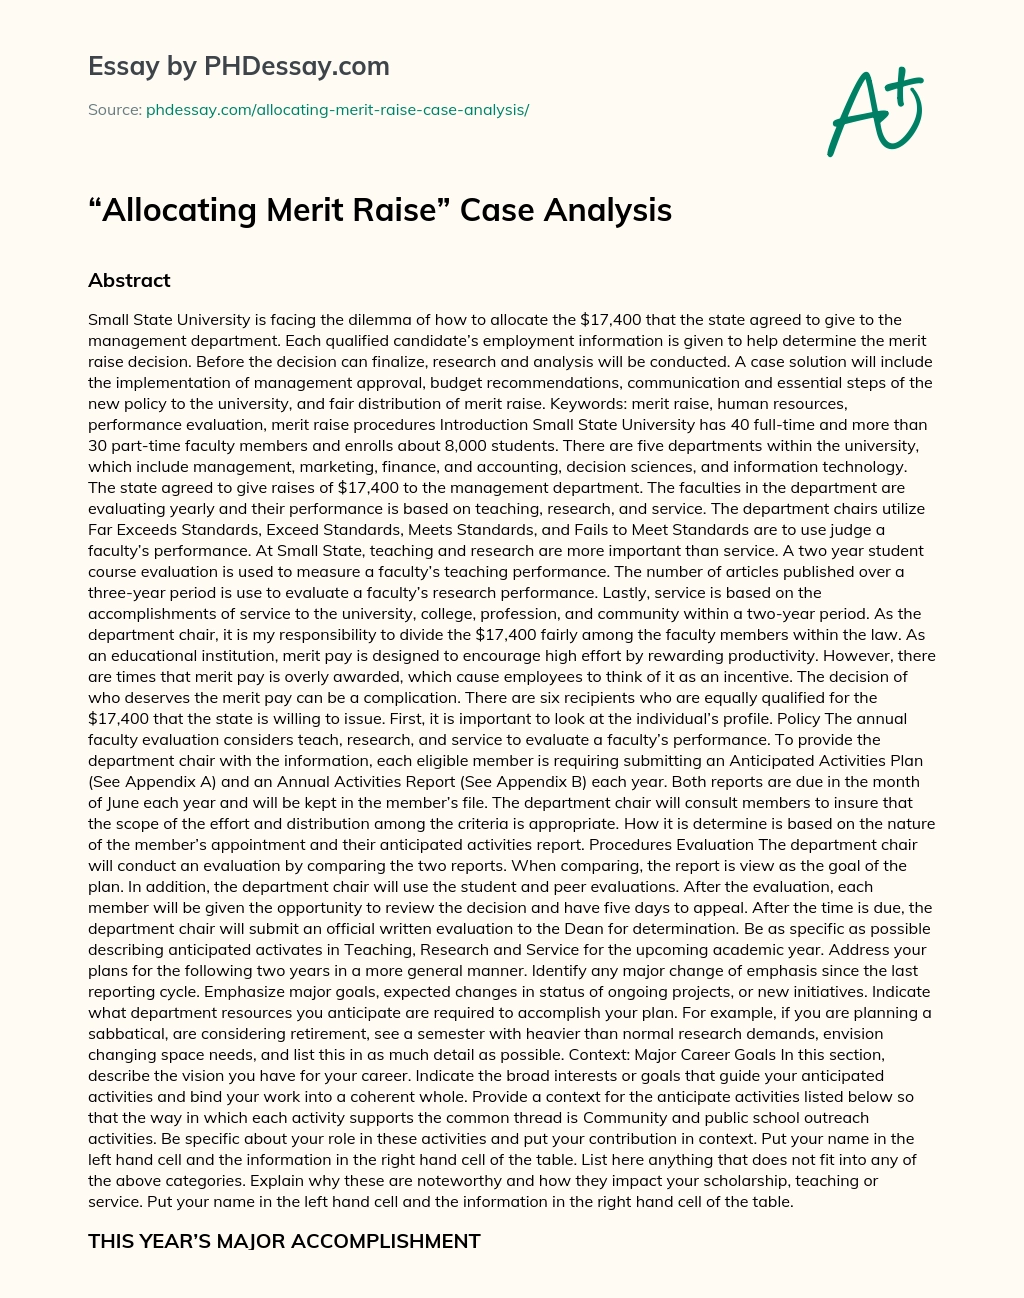 Allocating Merit Raise Case Analysis essay